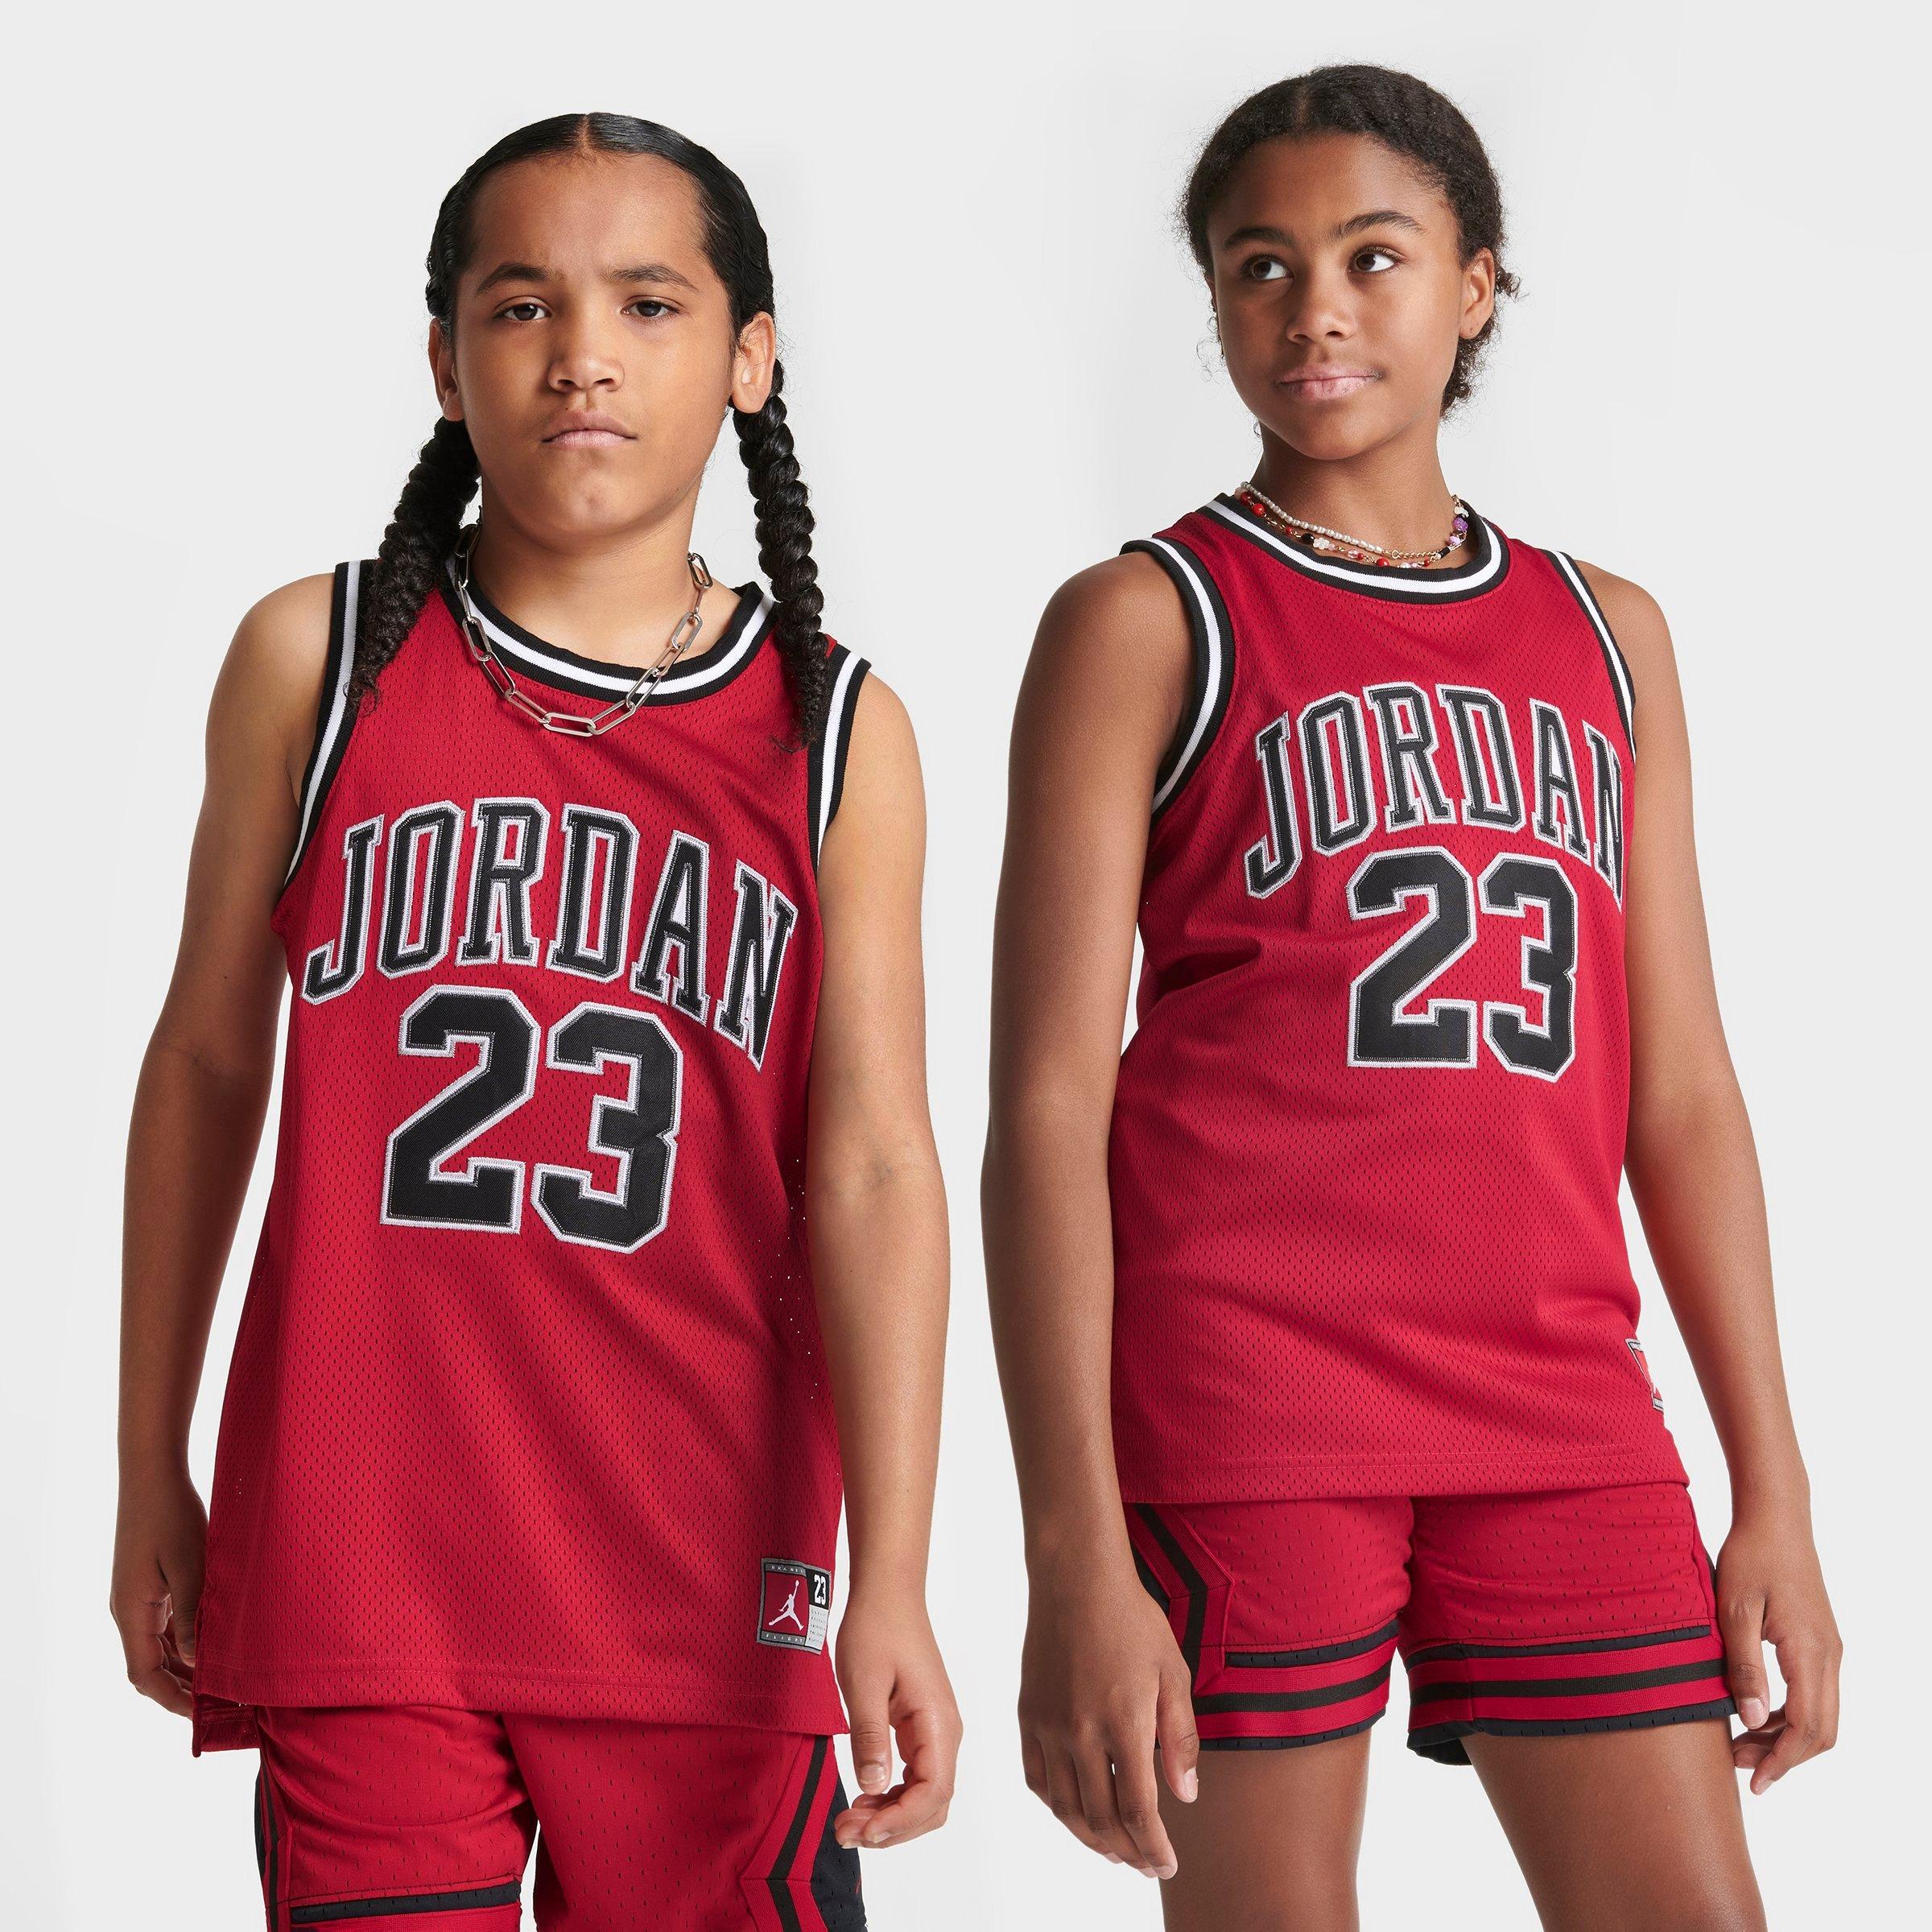 Nike Jordan Kids' Basketball Jersey In Red/black